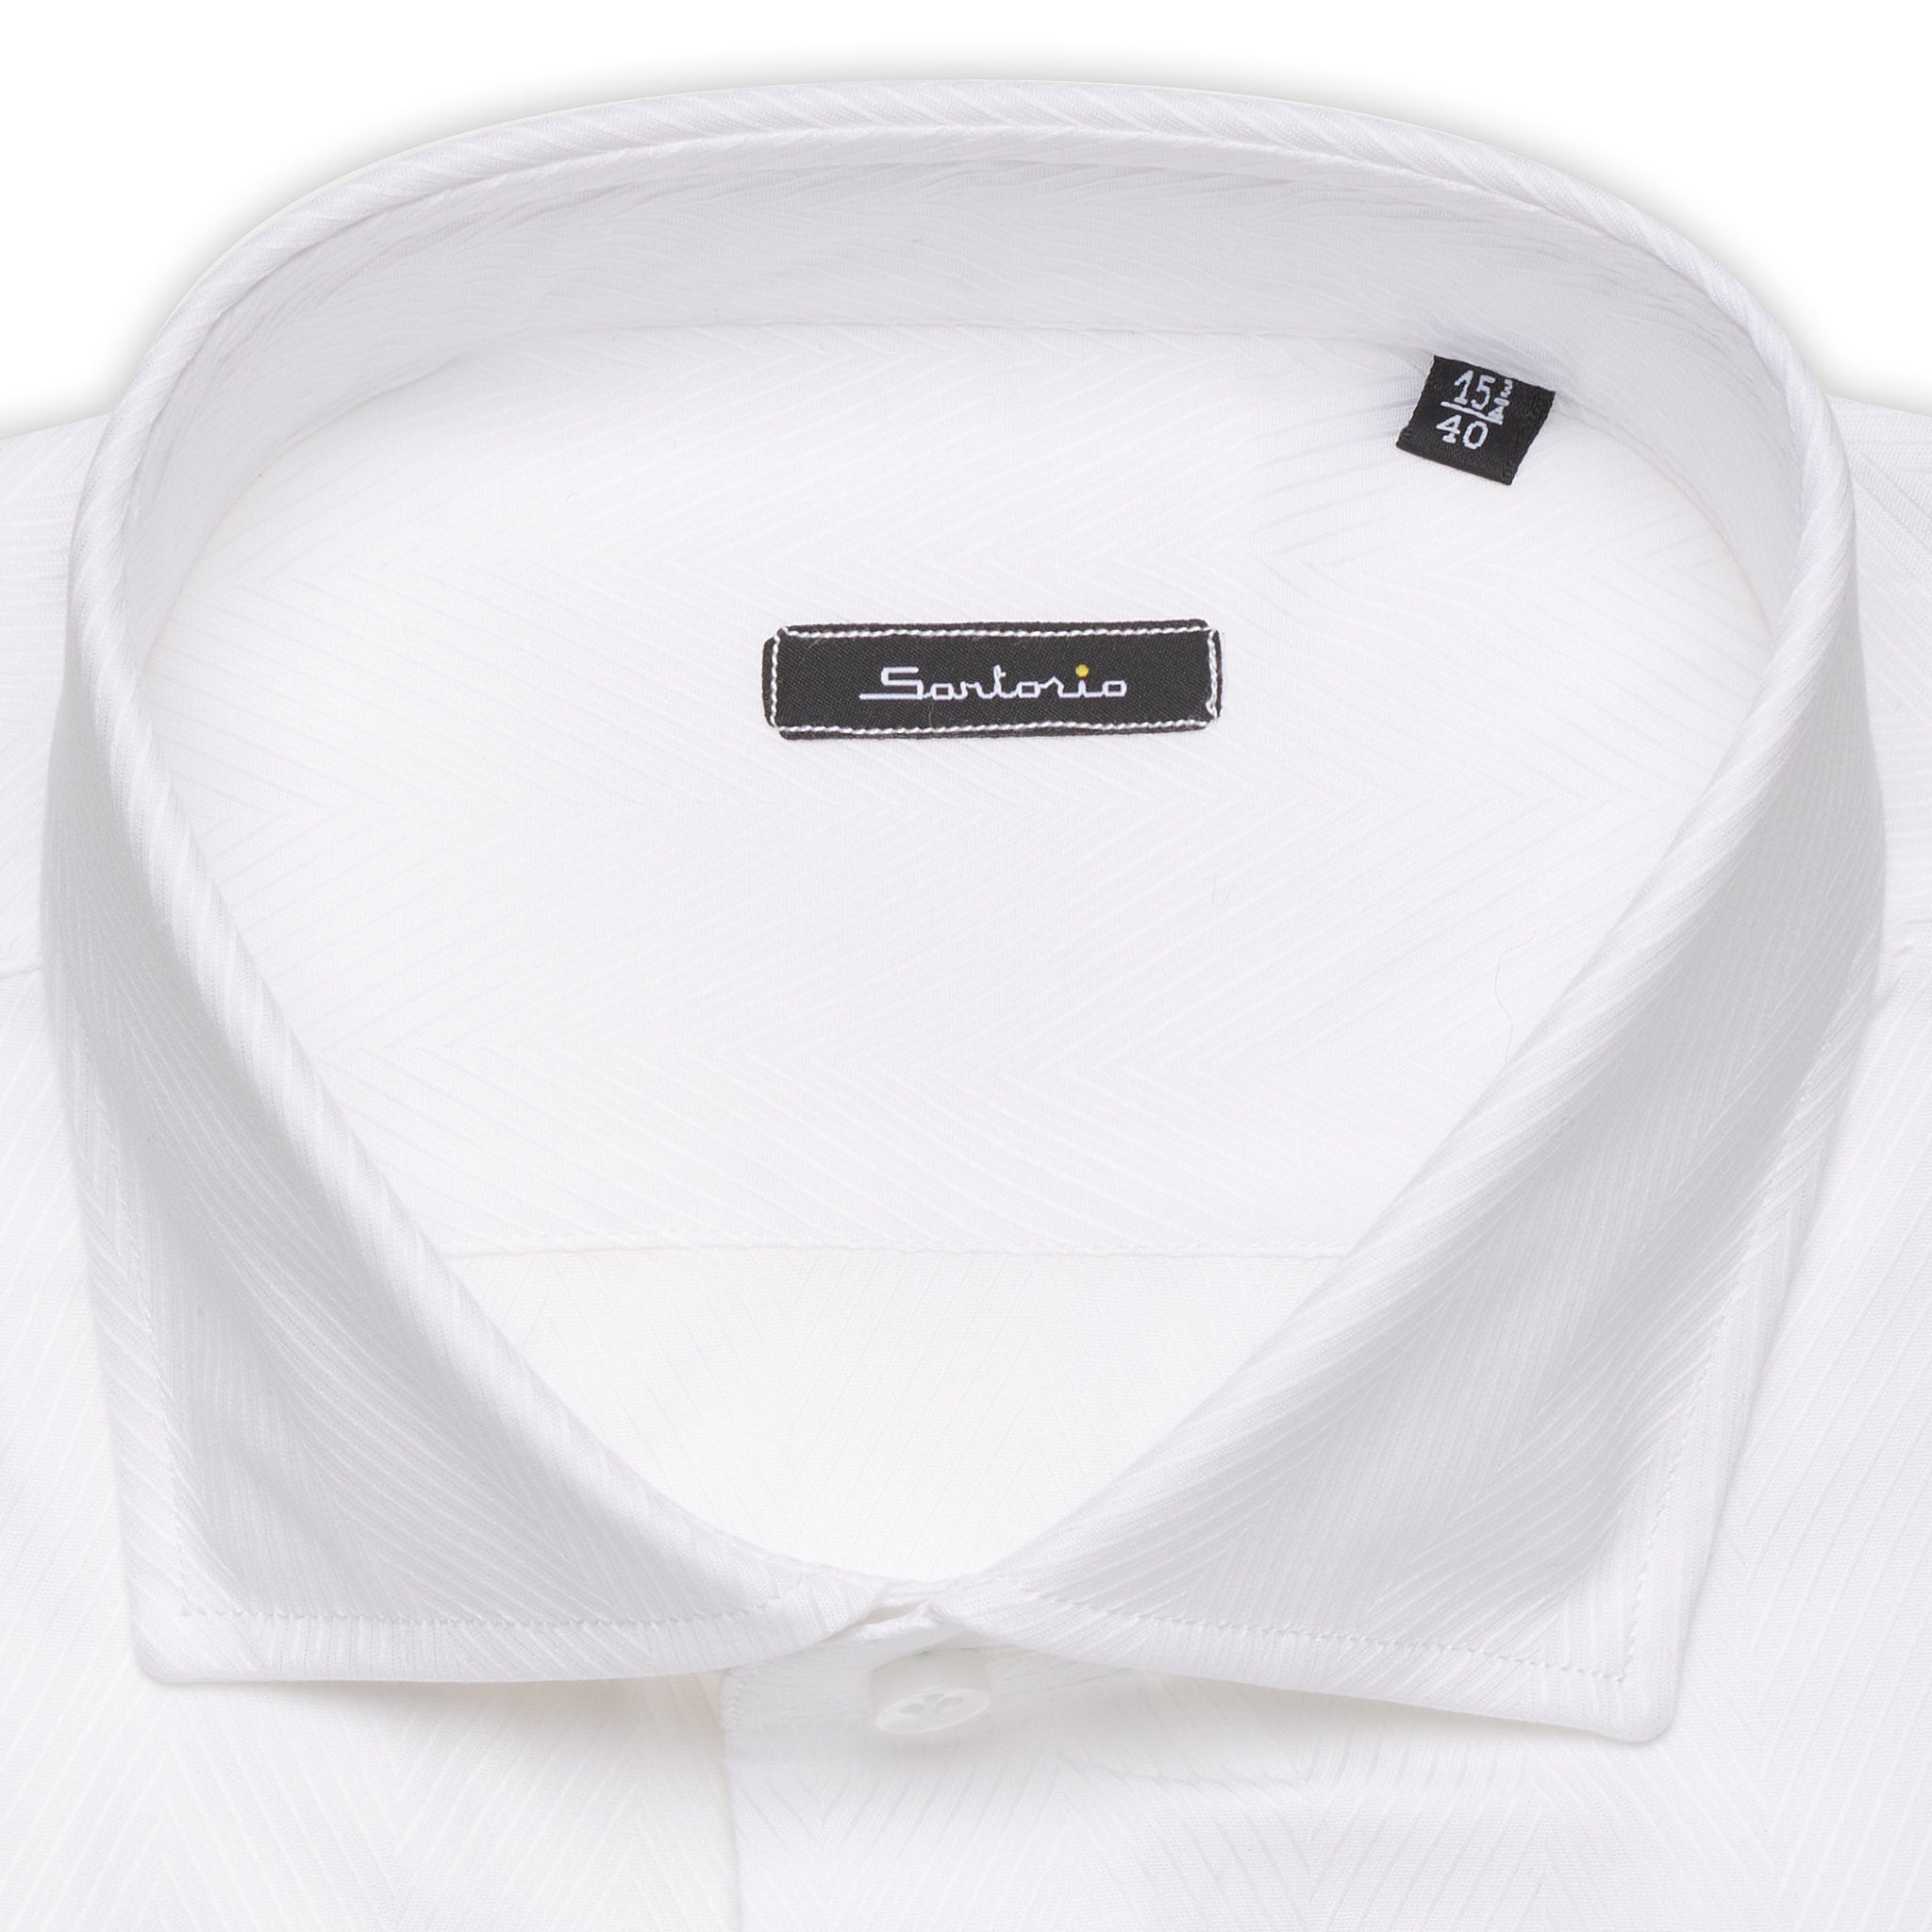 SARTORIO by KITON White Jacquard Herringbone Cotton Dress Shirt NEW Slim Fit SARTORIO